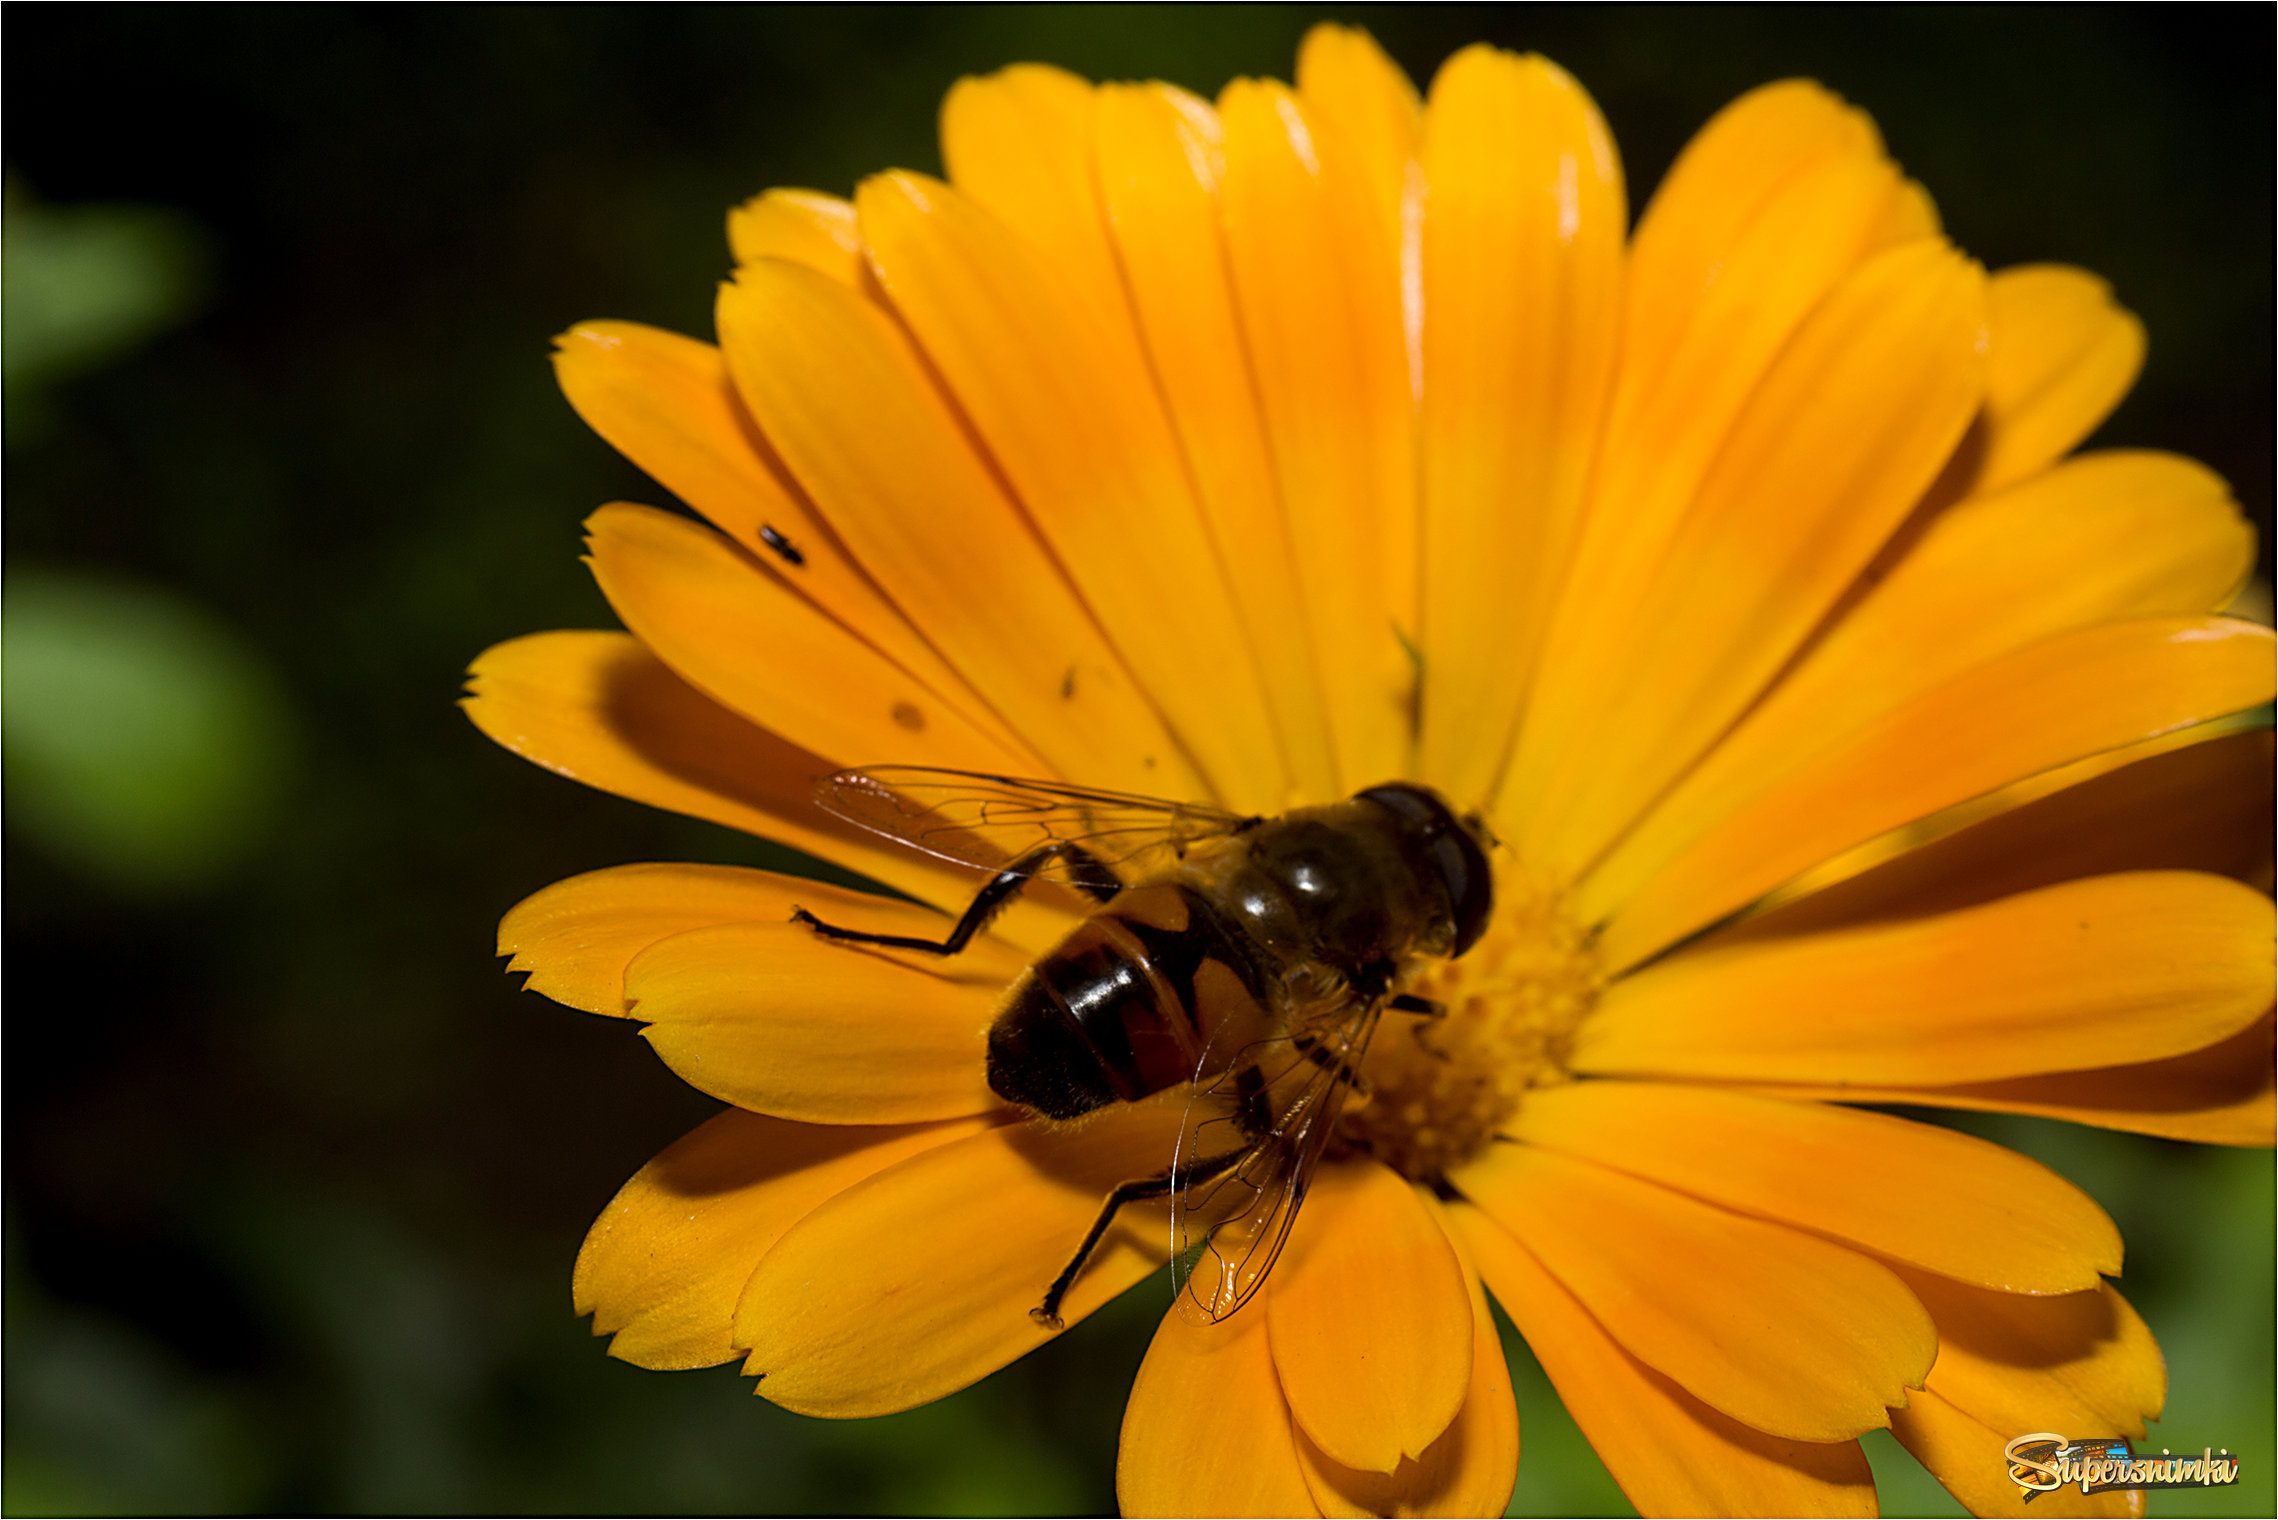 Жёлтенький мухо на жёлтеньком цветке